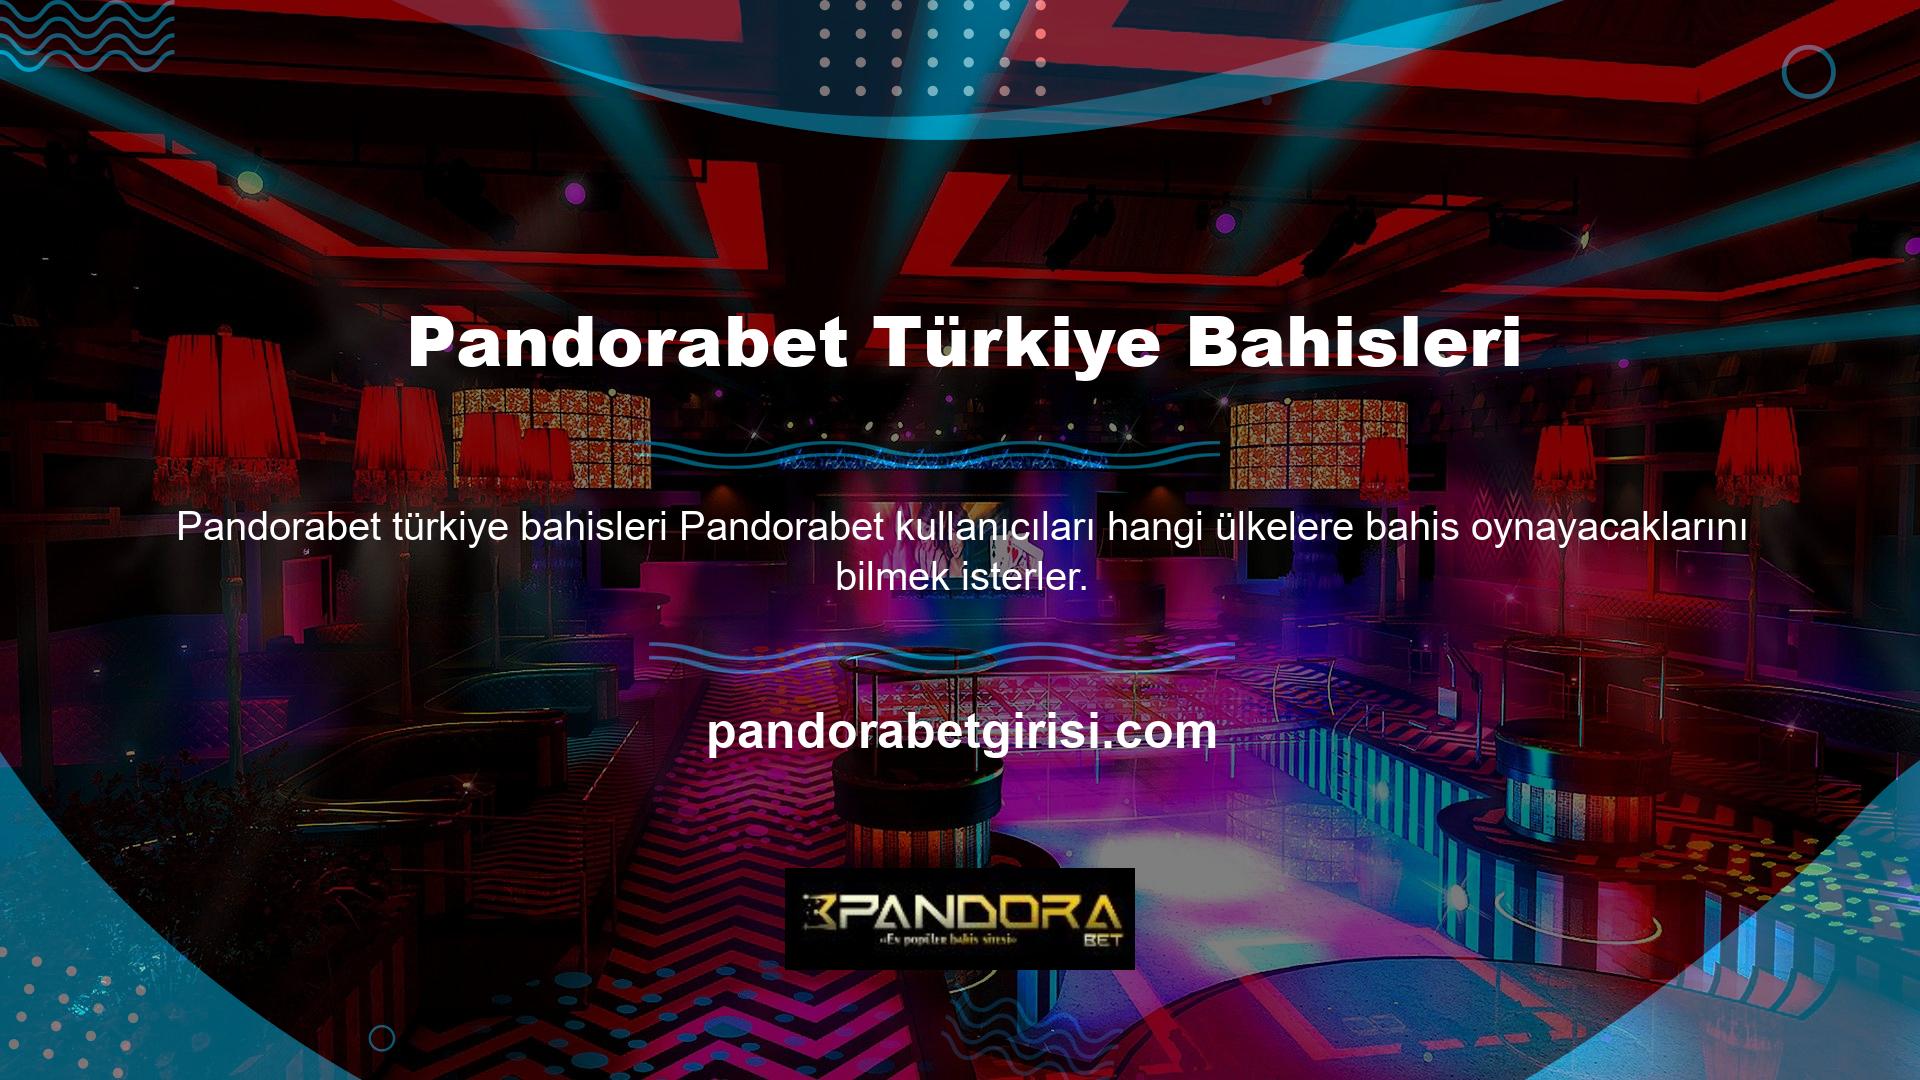 Şirket, özellikle Türkiye pazarında geniş bir oyun yelpazesi sunan çok güçlü bir bahis şirketidir